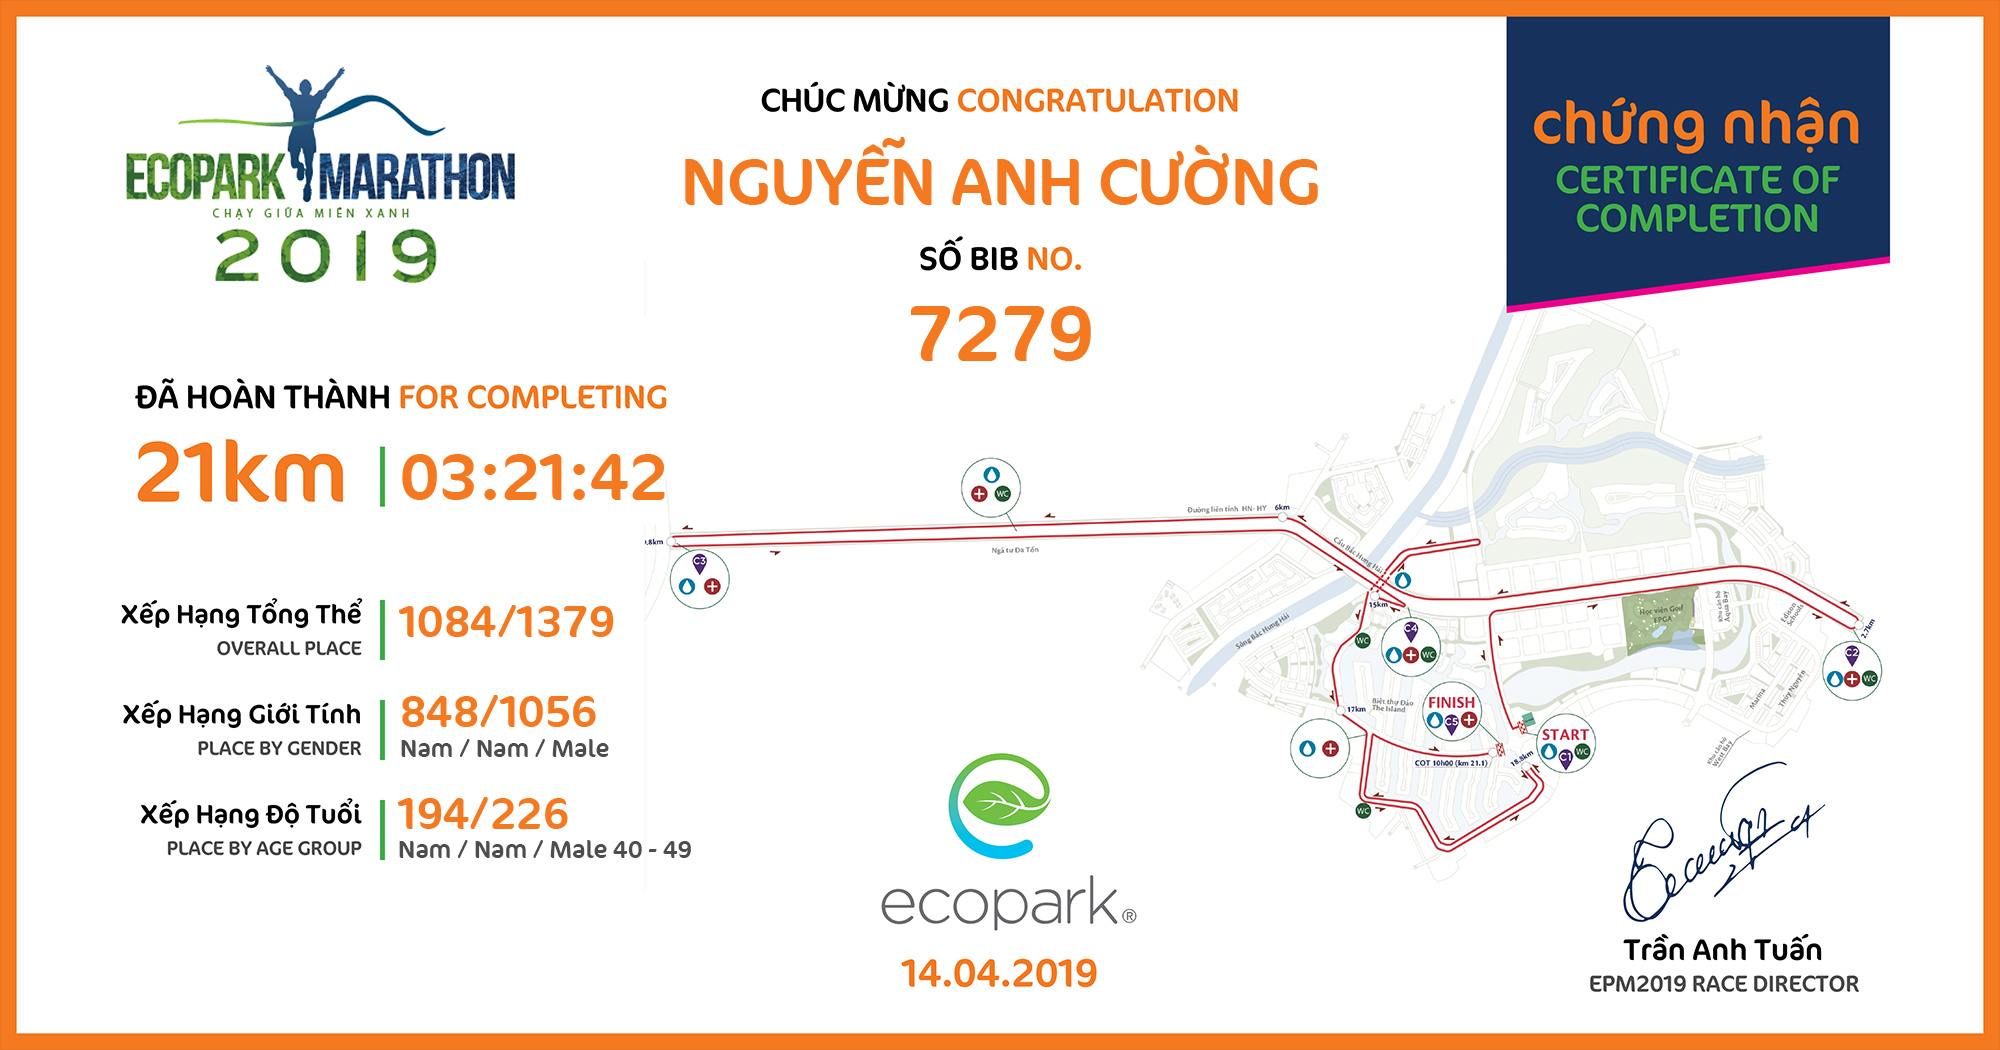 7279 - Nguyễn Anh Cường